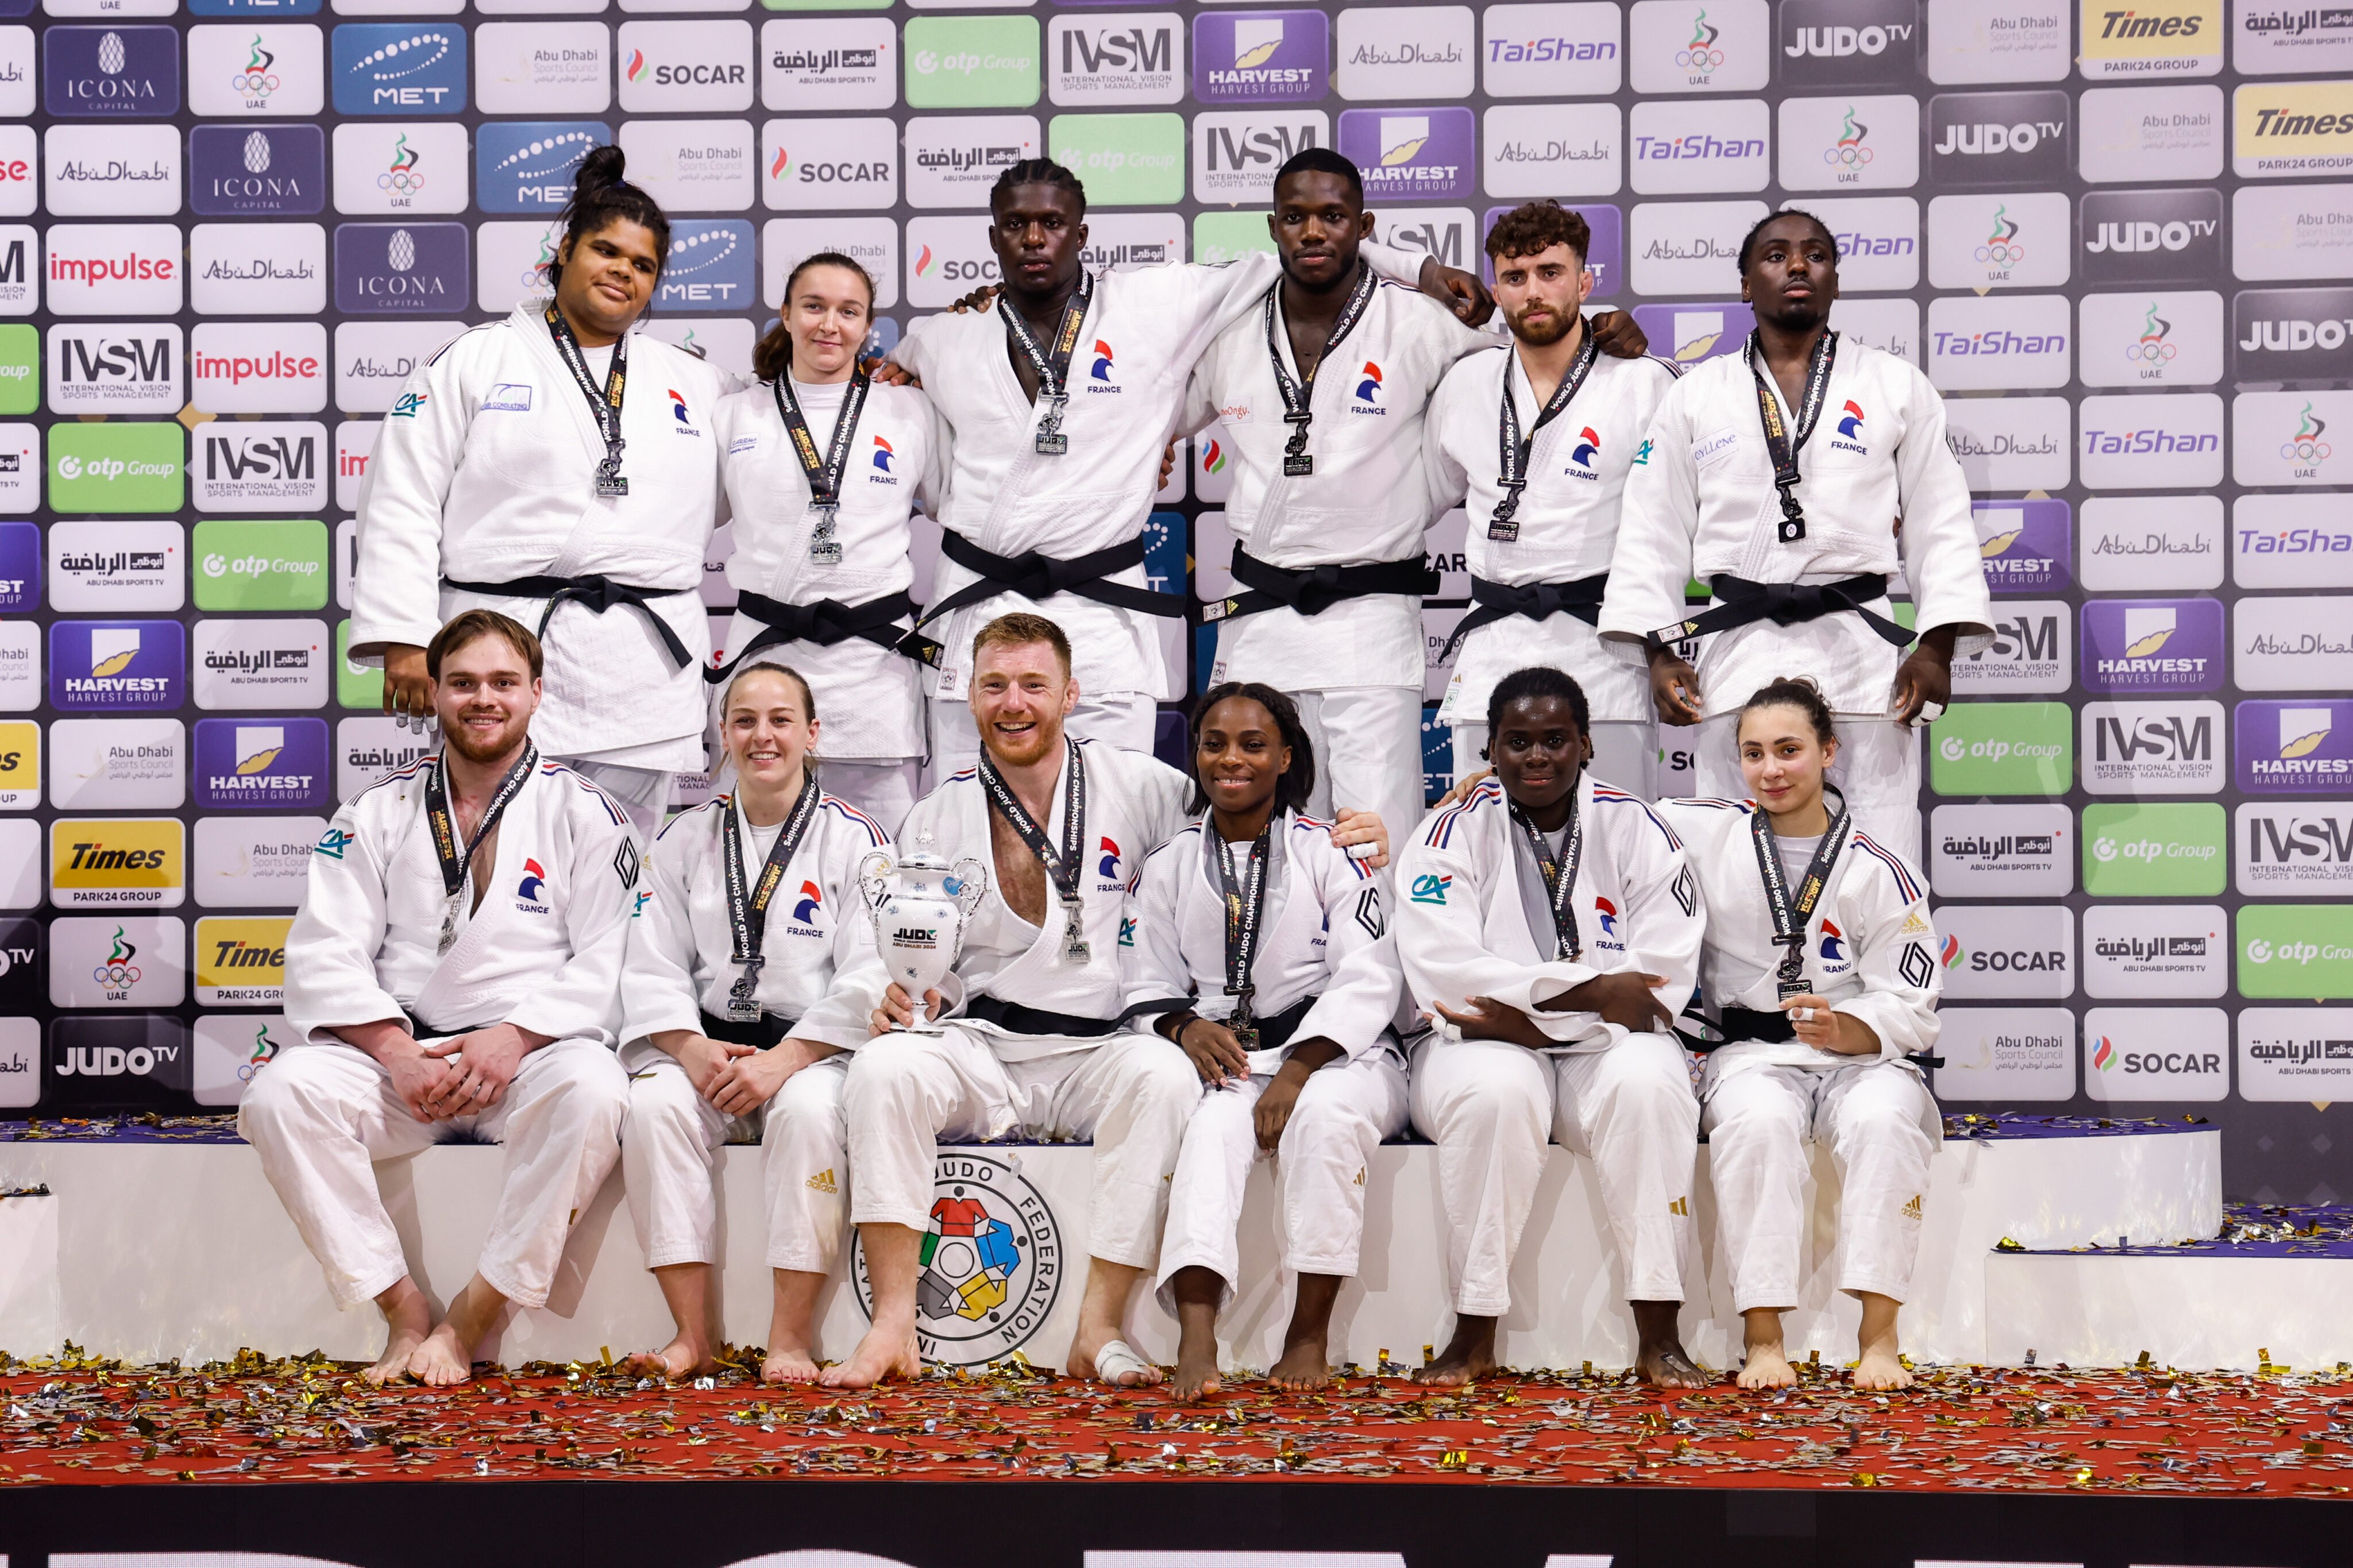 La France reste en avance sur ses concurrents – Fédération européenne de judo